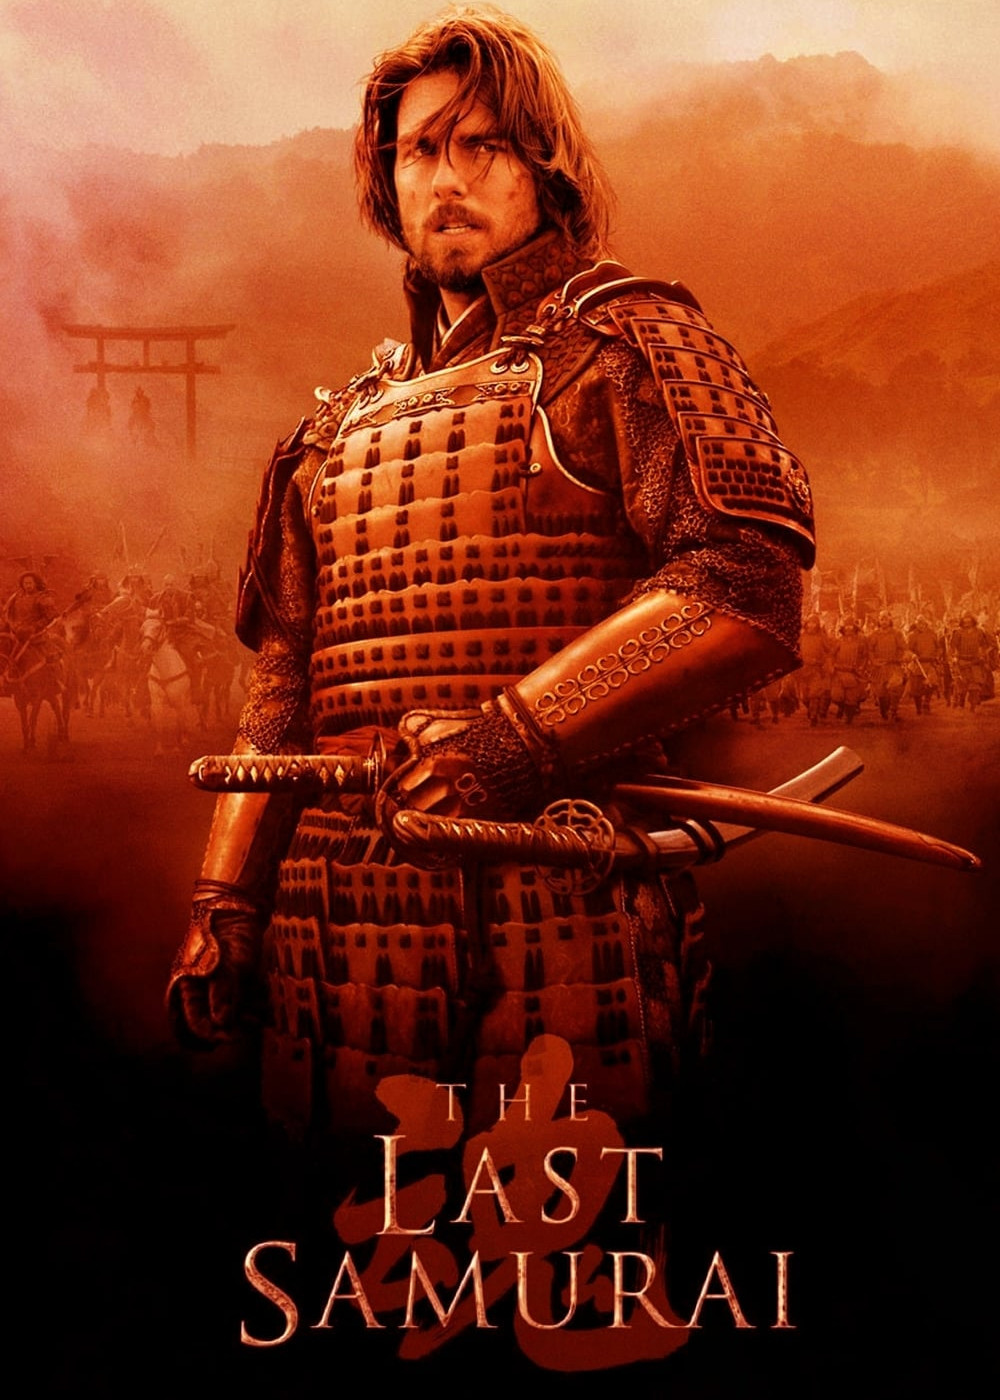 The Last Samurai (The Last Samurai) [2003]